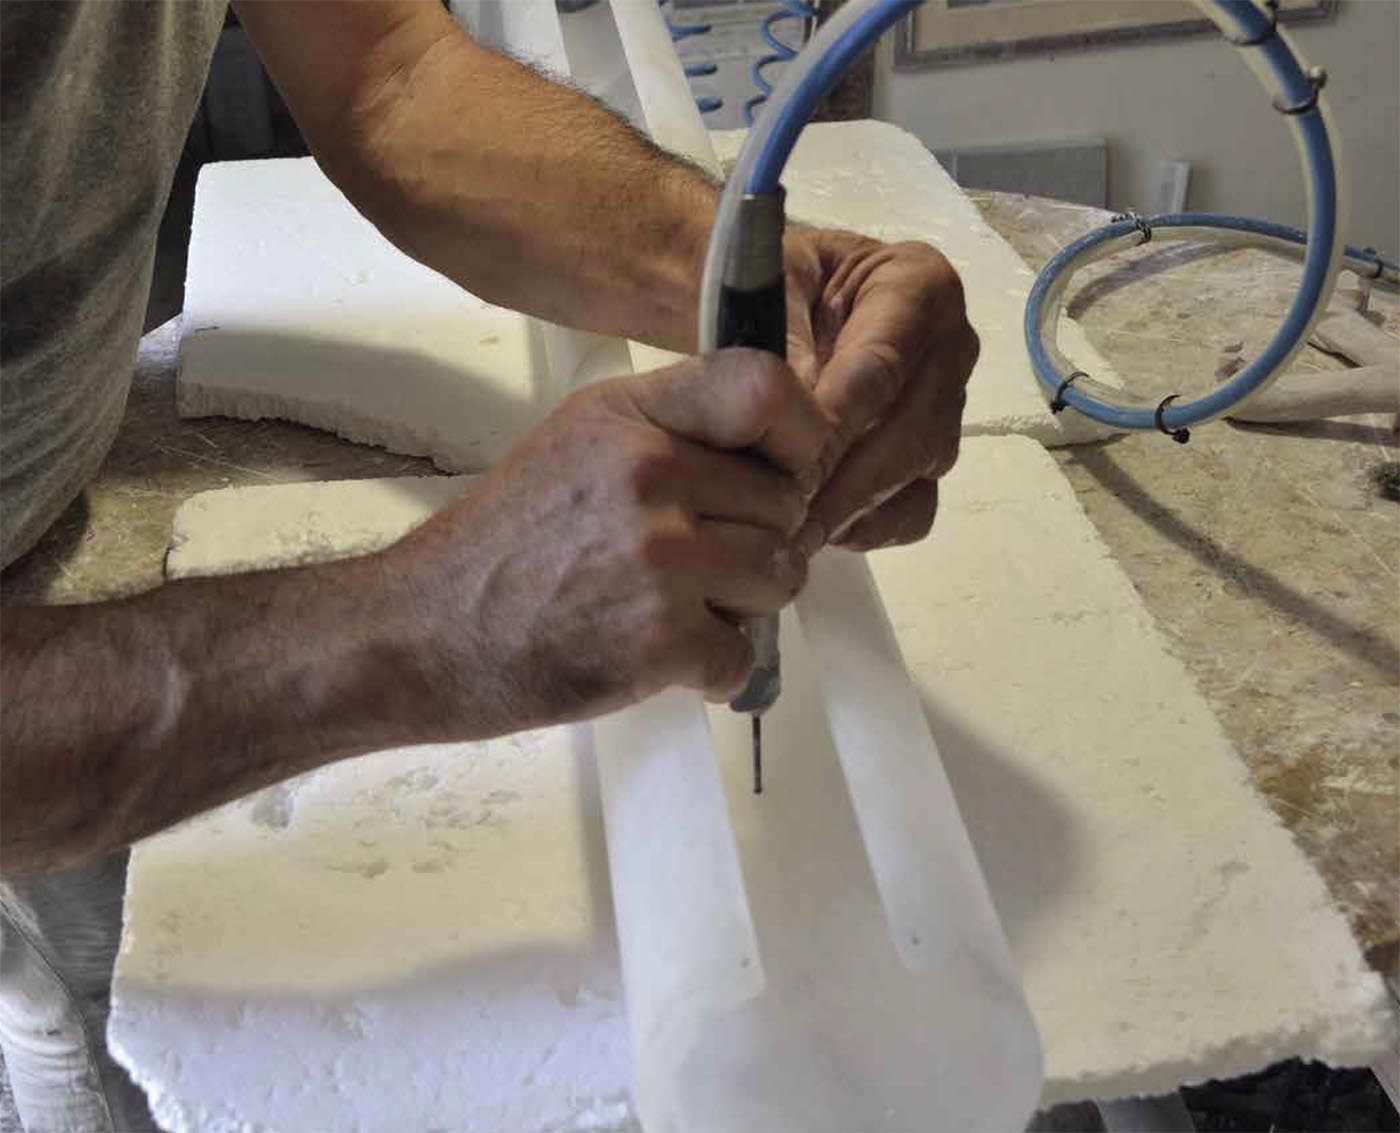 Italienische Stehleuchte mit Alabaster-Röhre und Marmor-Sockel ZEUS: Alabaster muss mit großer Sorgfalt von erfahrenen Handwerkern verarbeitet werden